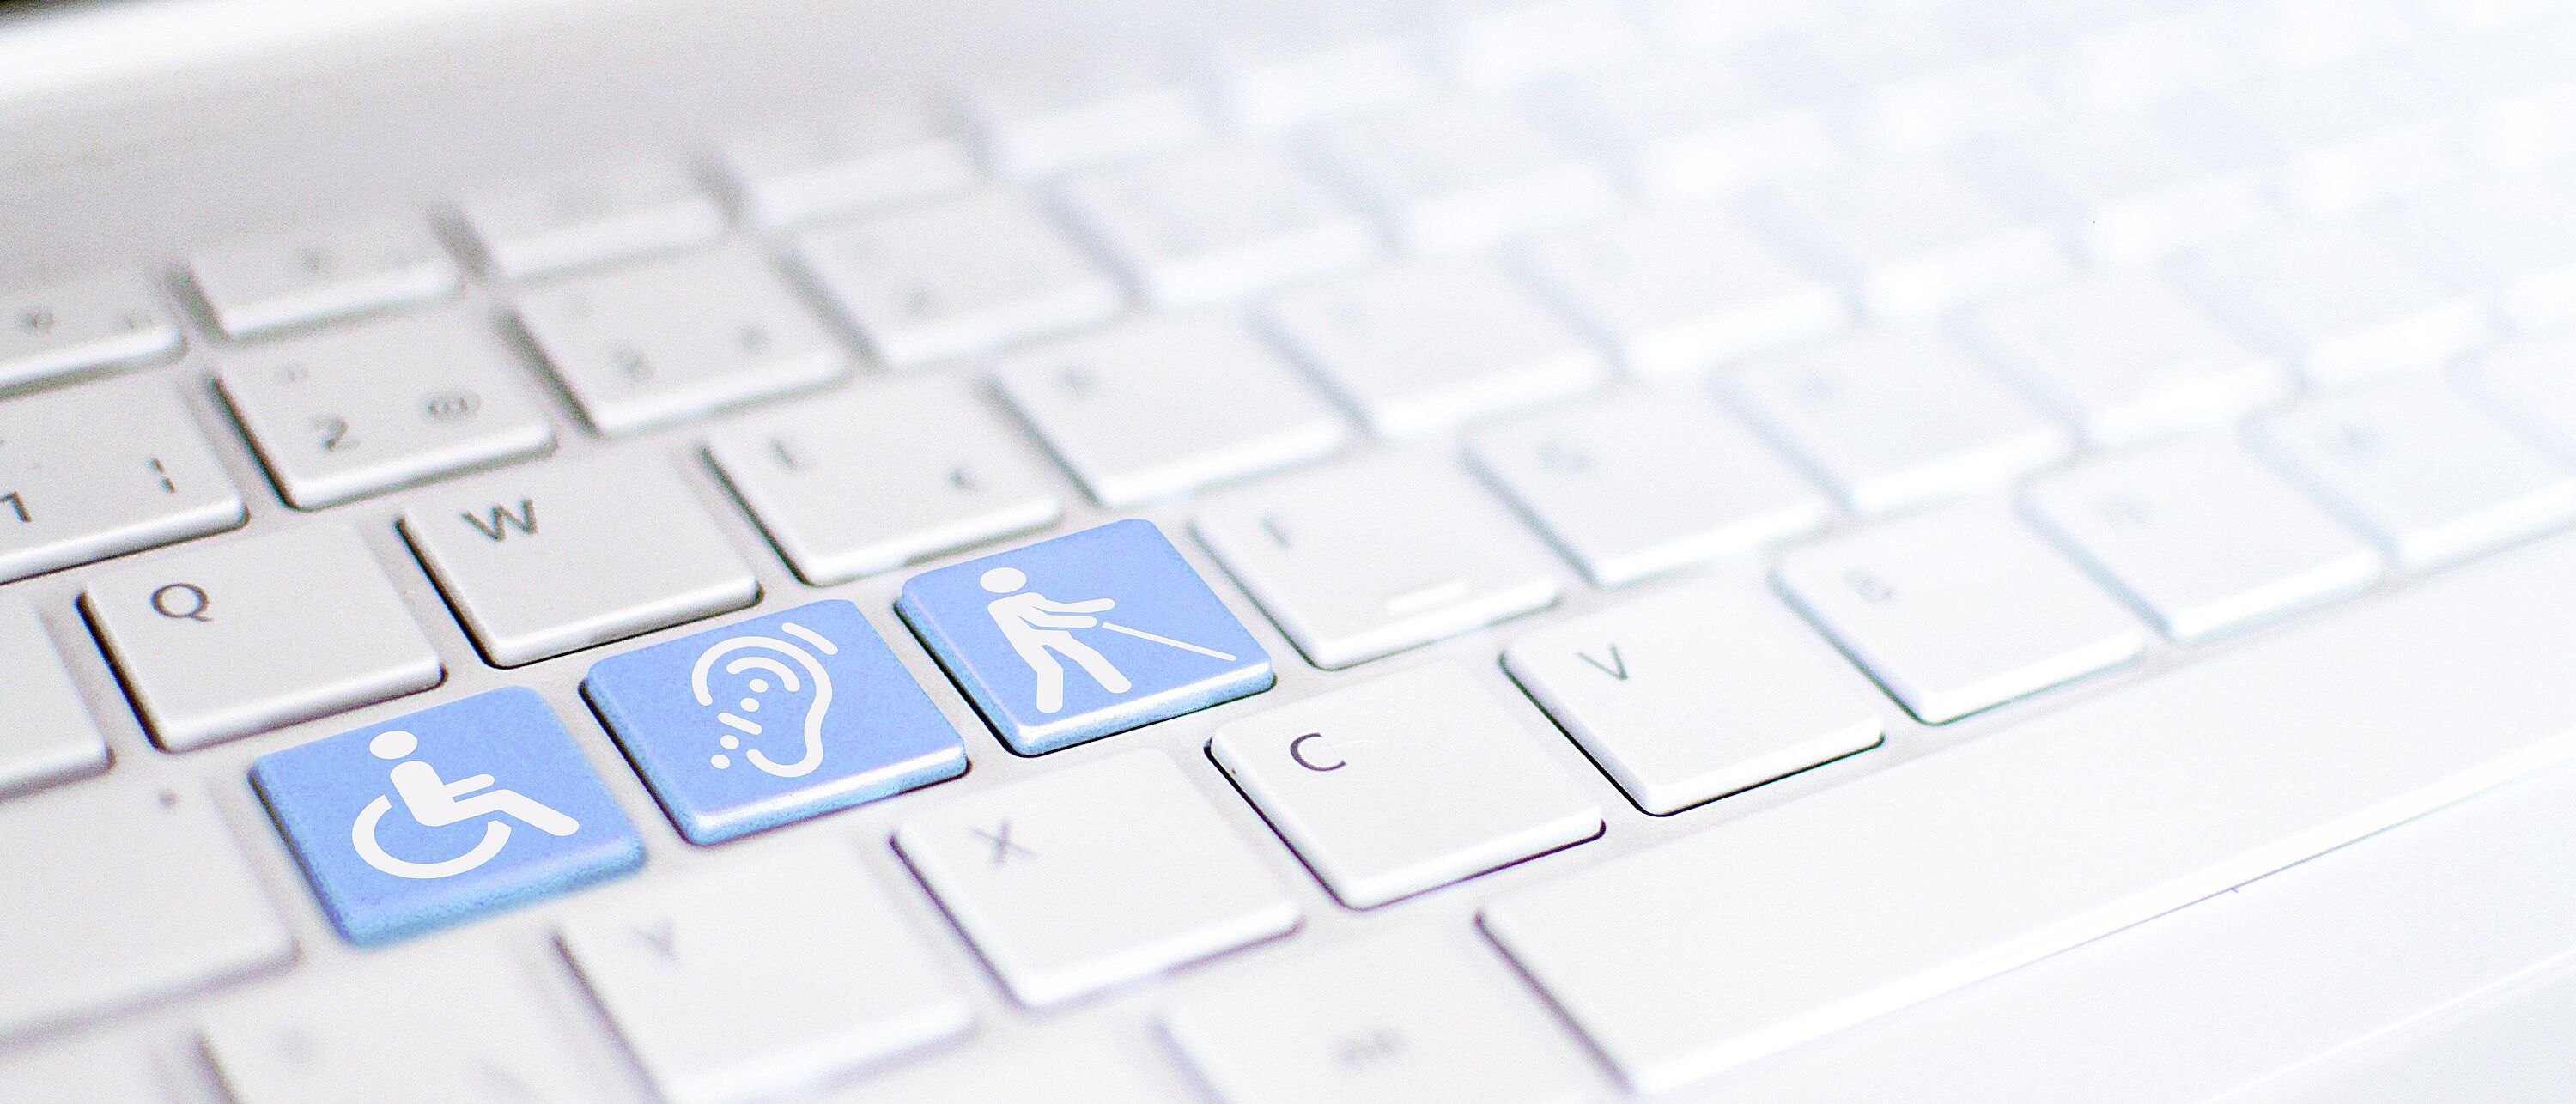 Bildmontage: Macroaufnahme von einer Tastatur, darauf drei blau hervorgehobene Tasten mit weißen Icons/Symbole eines Rollstuhl, gehörlos und taub.